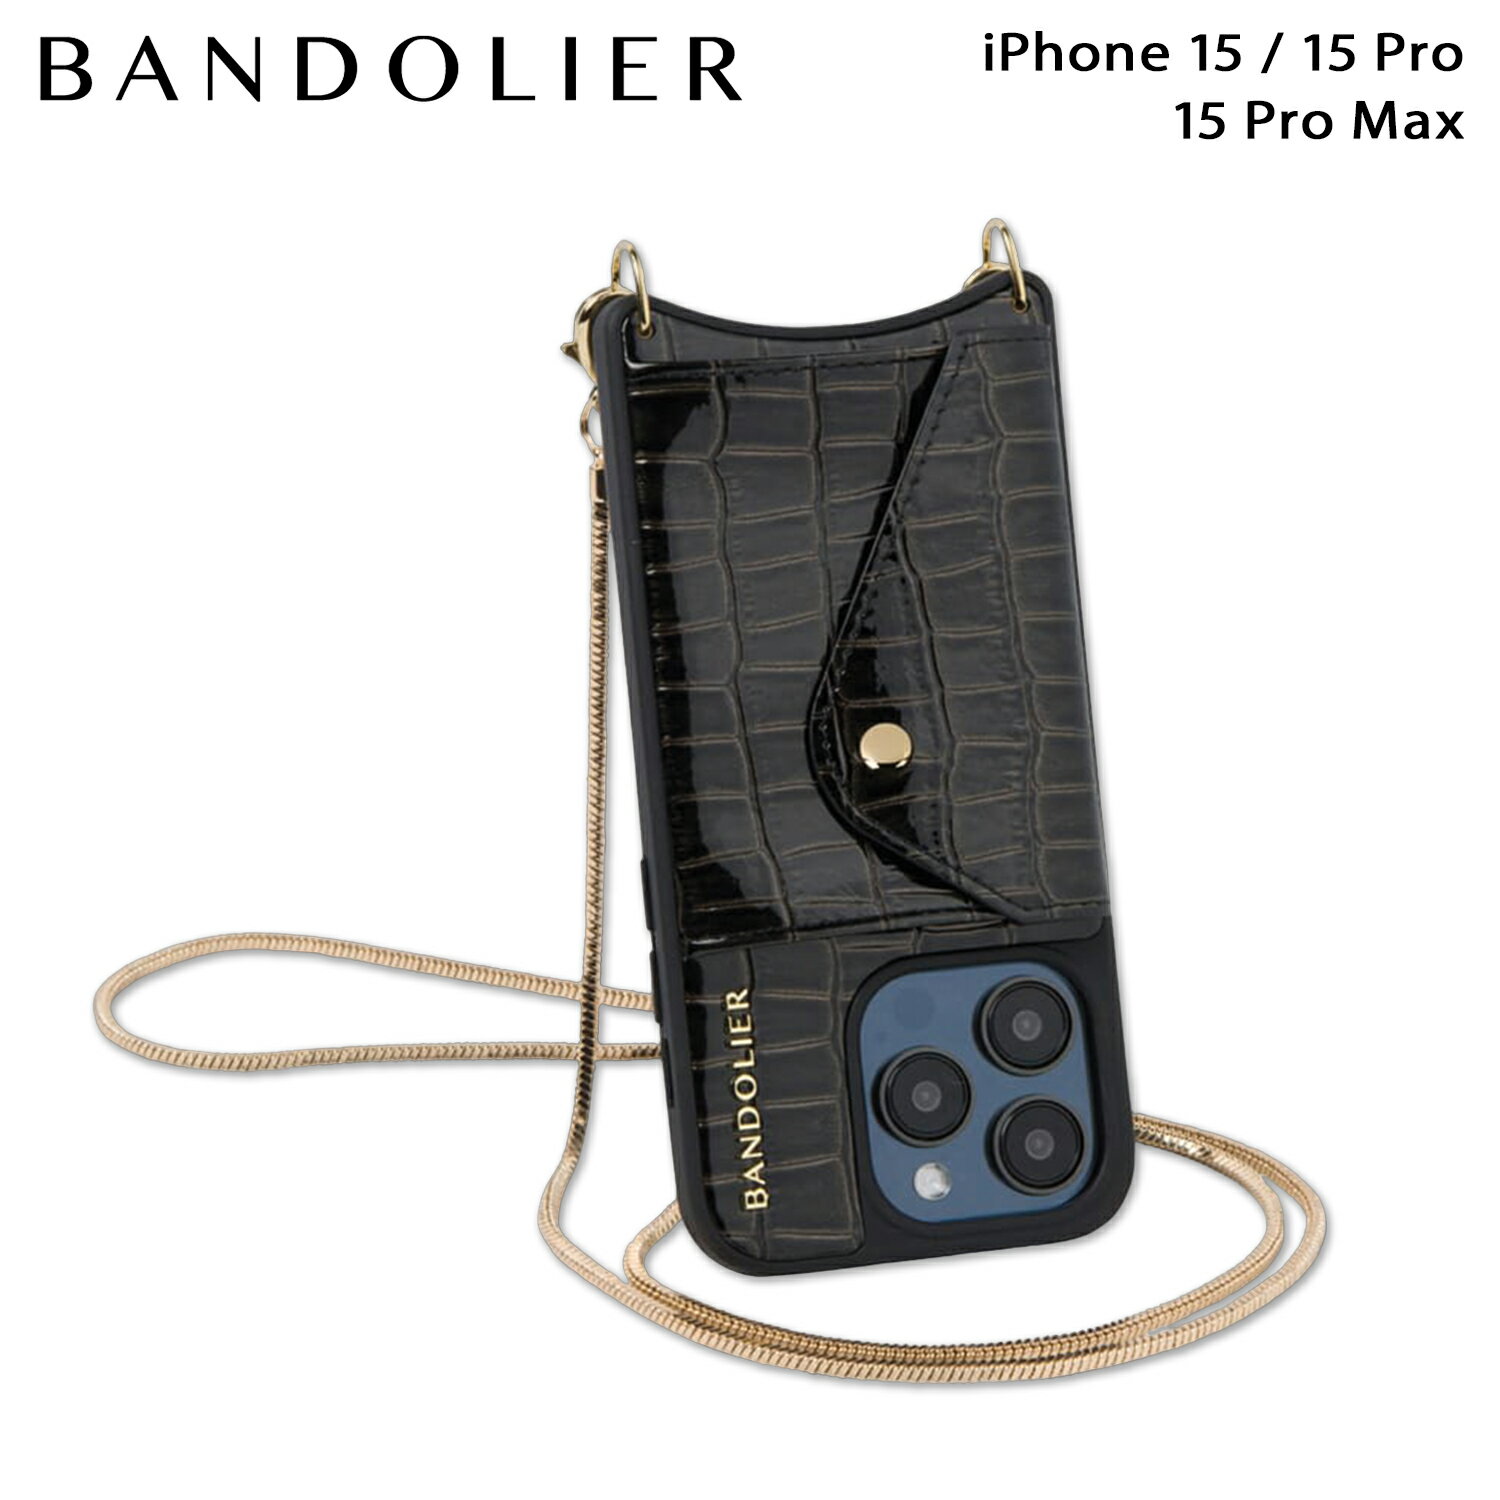 BANDOLIER バンドリヤー iPhone 15 15Pro iPhone 15 Pro Max スマホケース ストラップ バンドレット セット スマホショルダー ジア クリスタル メンズ レディース GIA CRYSTAL BANDOLET SET ブラック 黒 14GIK